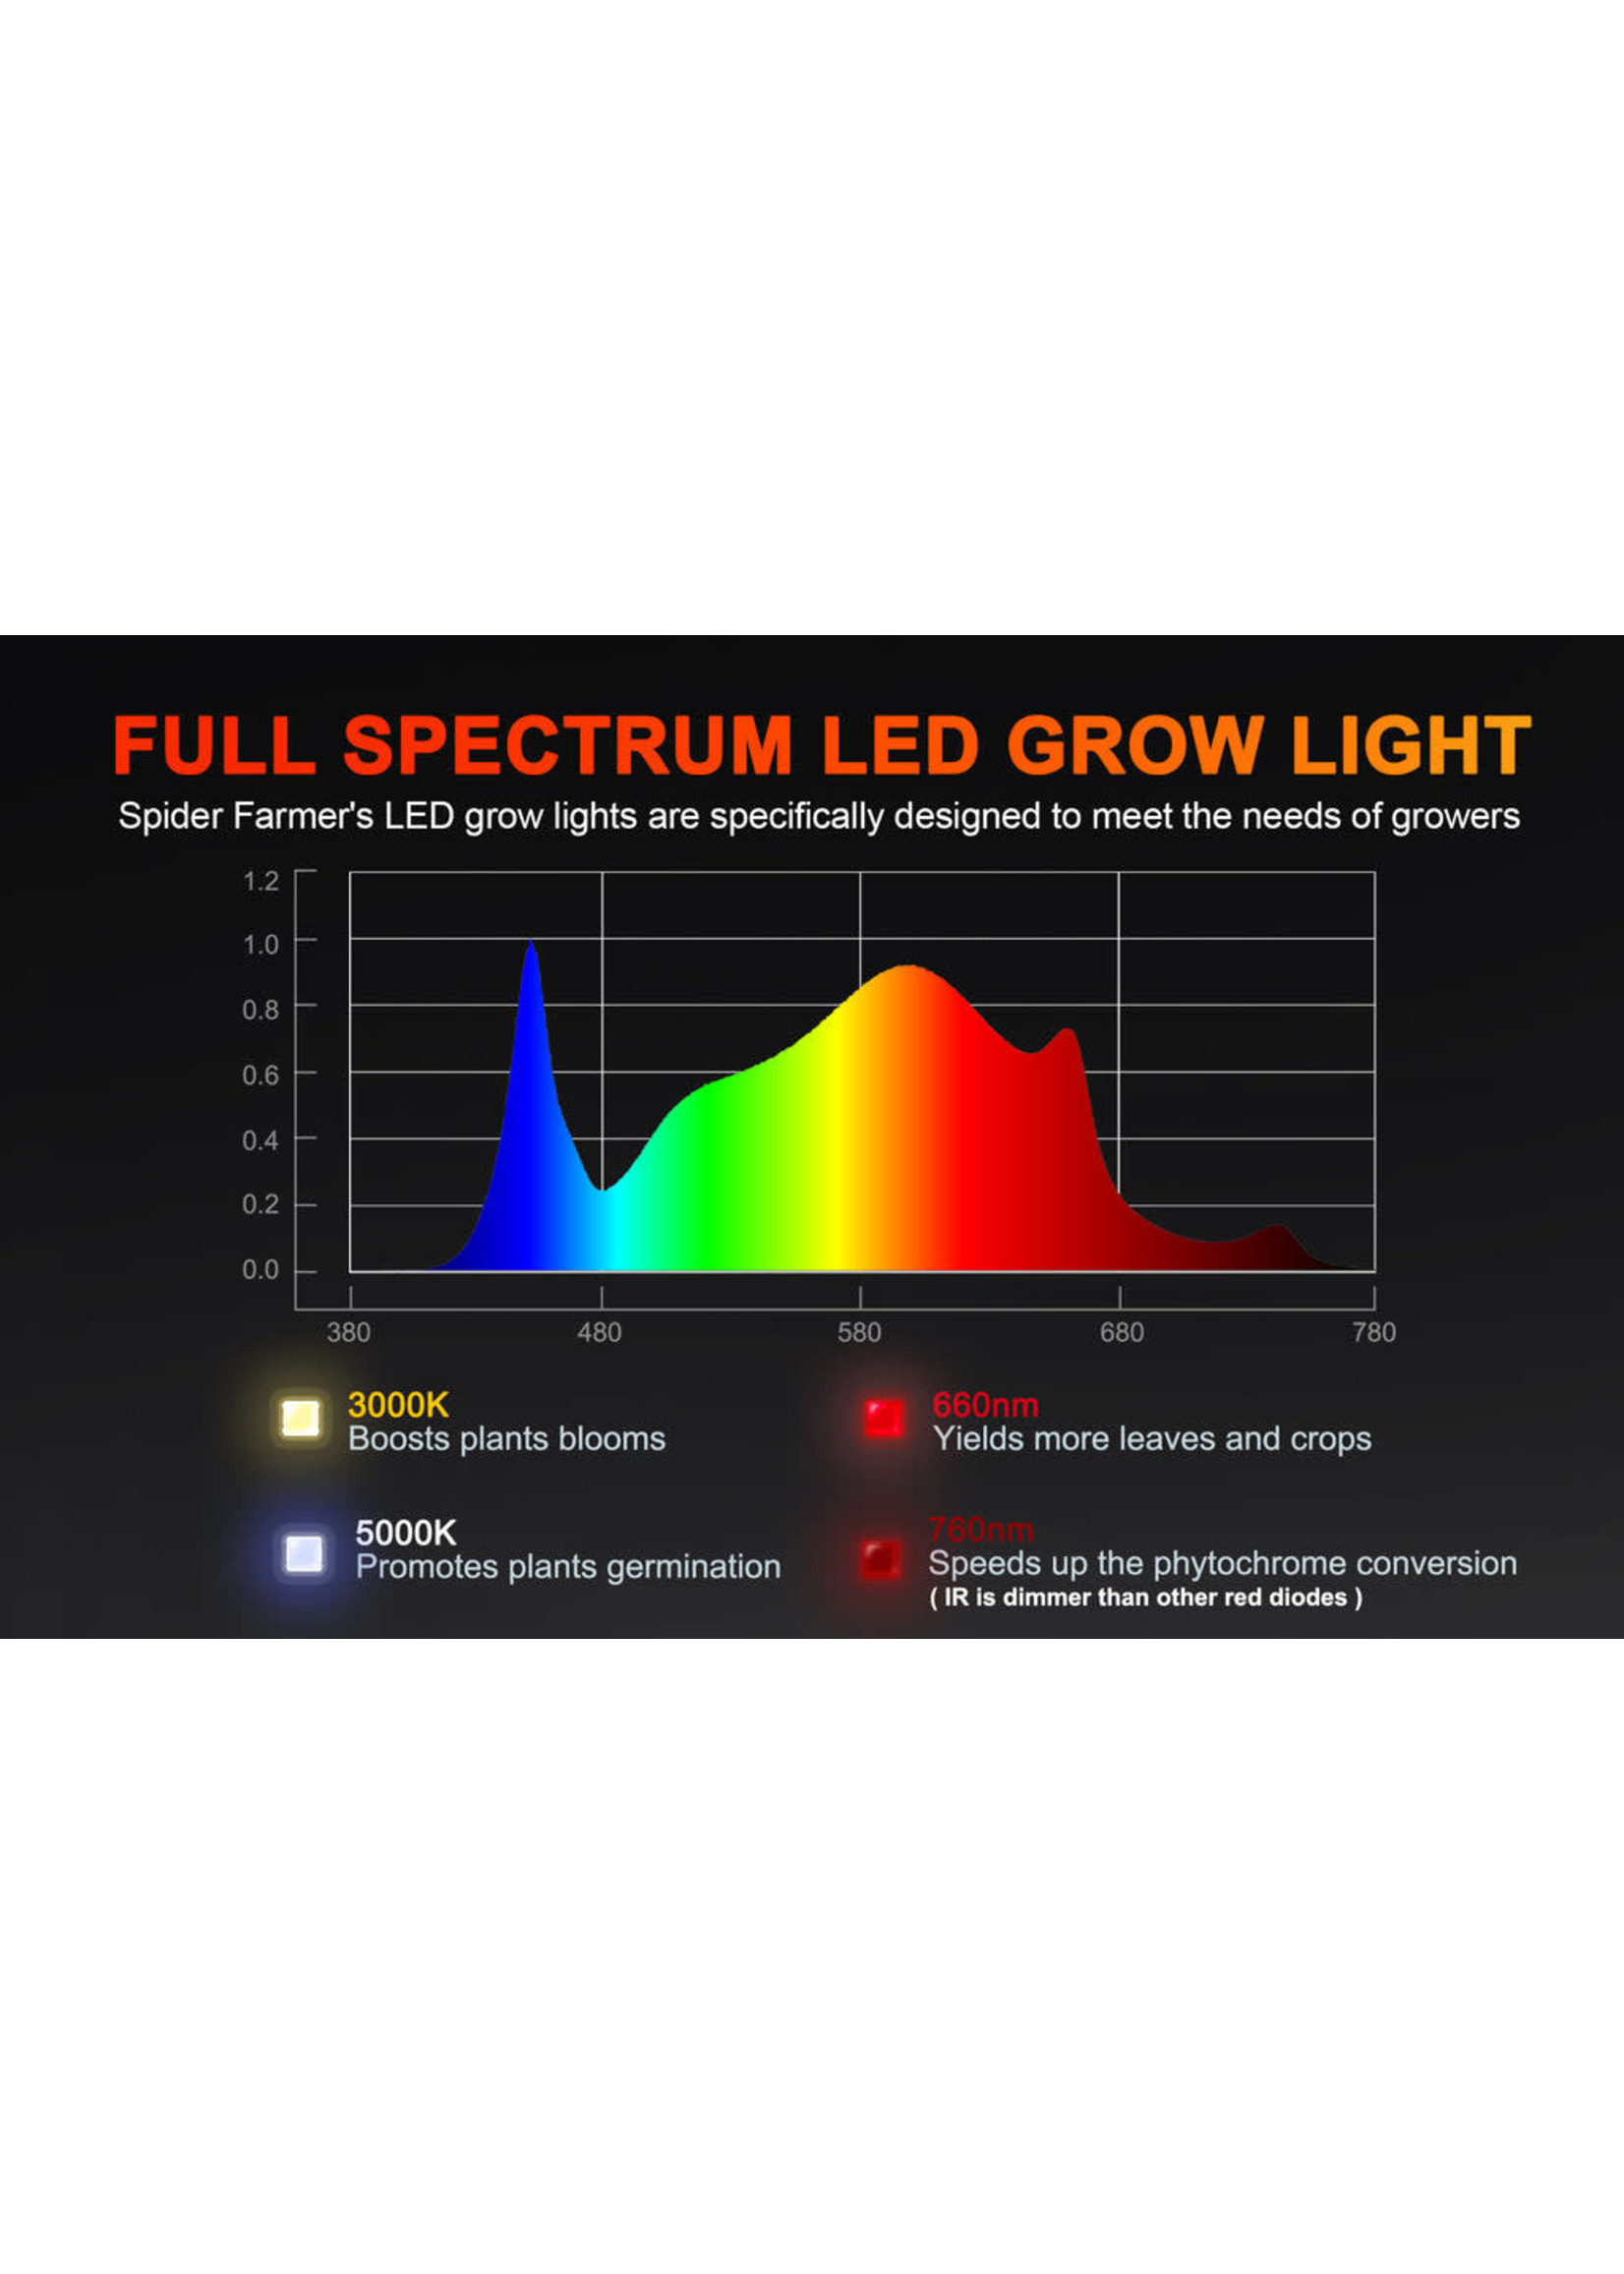 Spider Farmer Spider Farmer®SF1000 100W Full Spectrum LED Grow Light with Dimmer Knob